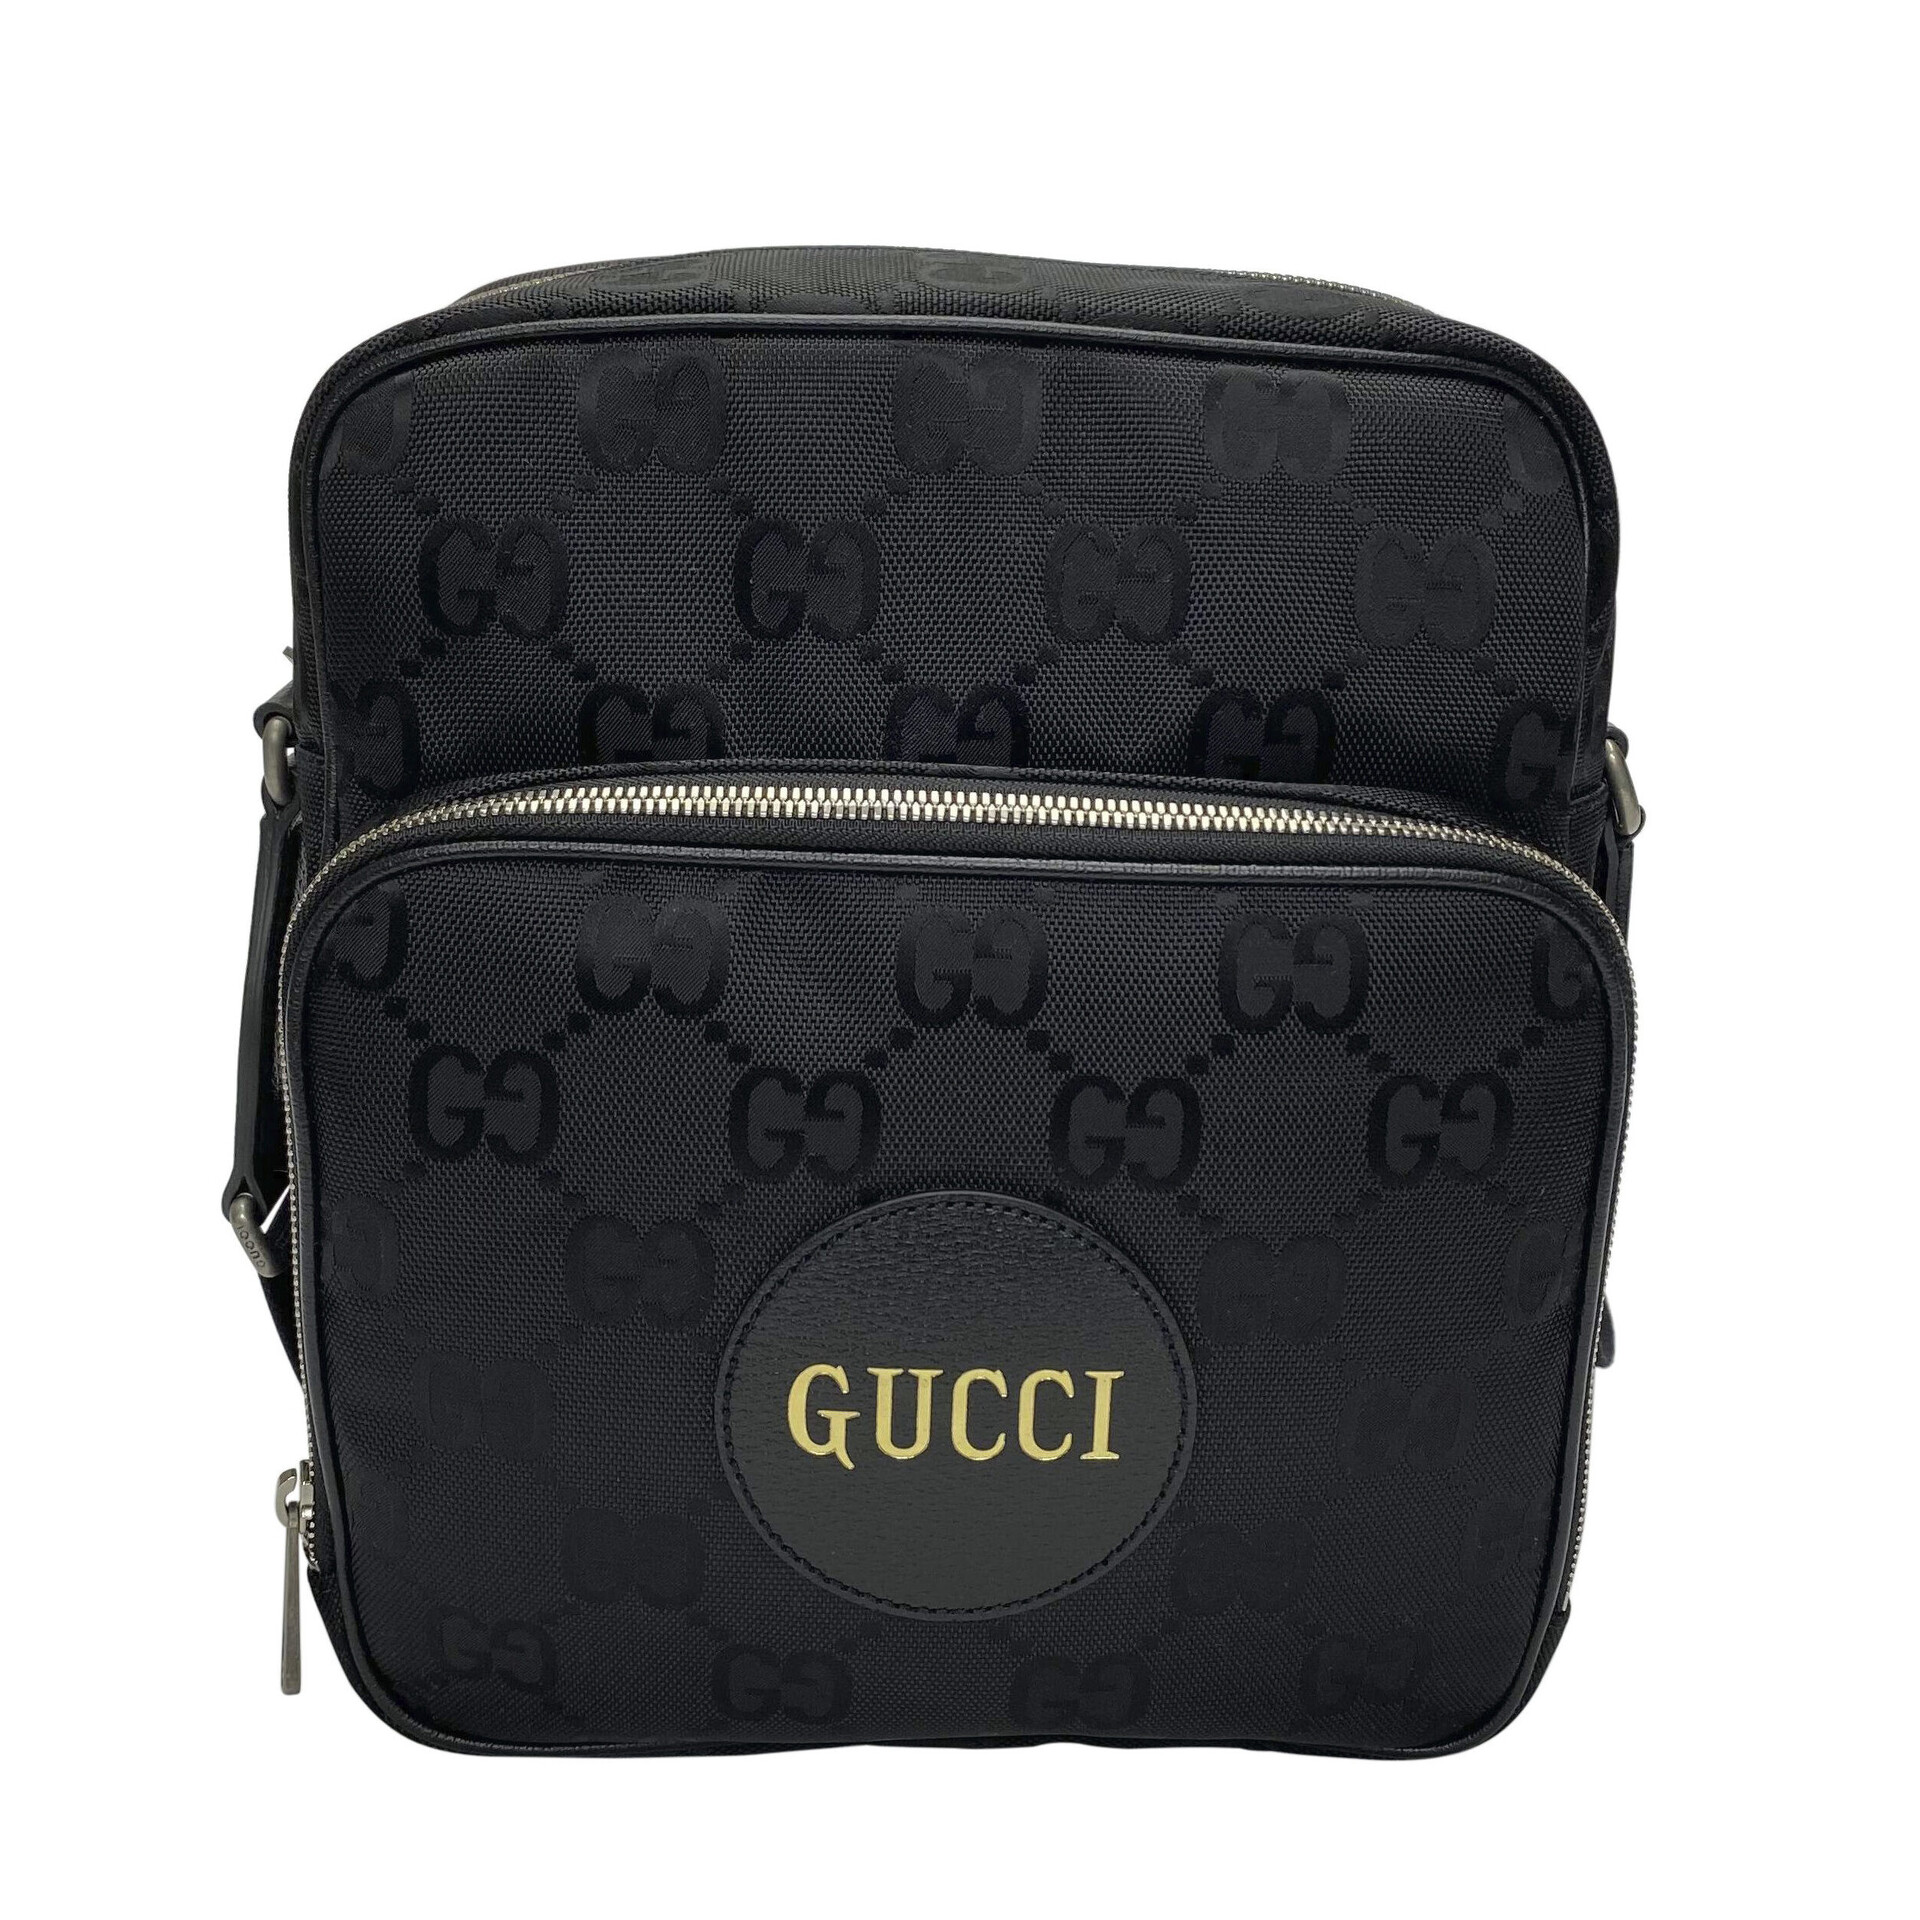 Bolsa Gucci é vendida por R$ 22 mil no Roblox (e pode ter sido